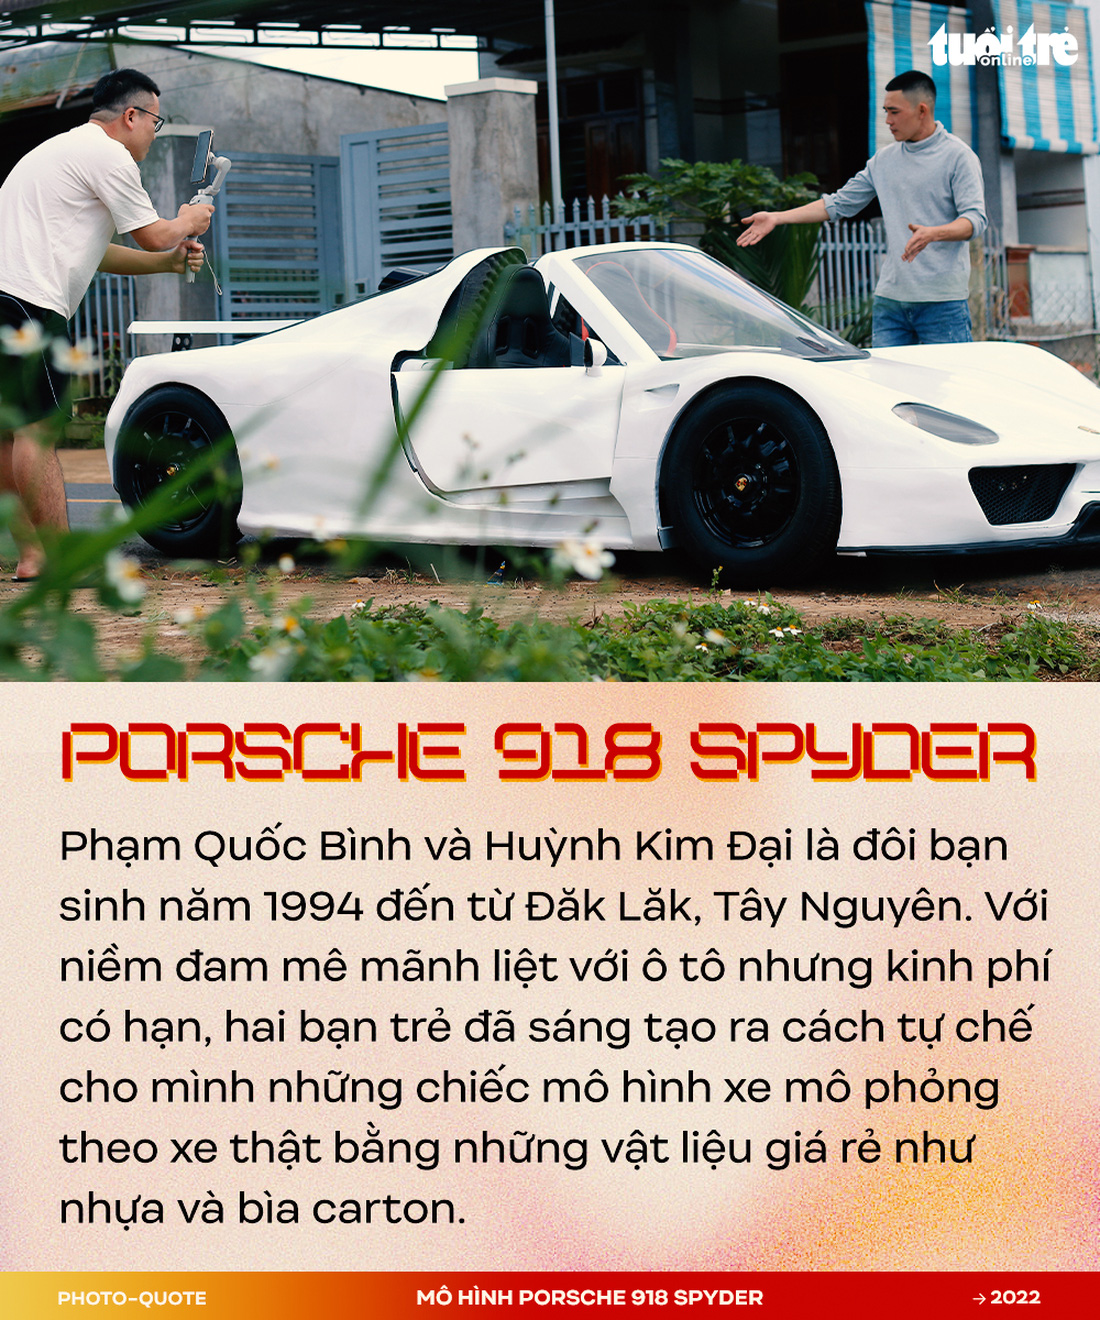 Đôi bạn 9X Tây Nguyên làm mô hình Porsche 918 Spyder gây sốt cộng đồng quốc tế - Ảnh 1.